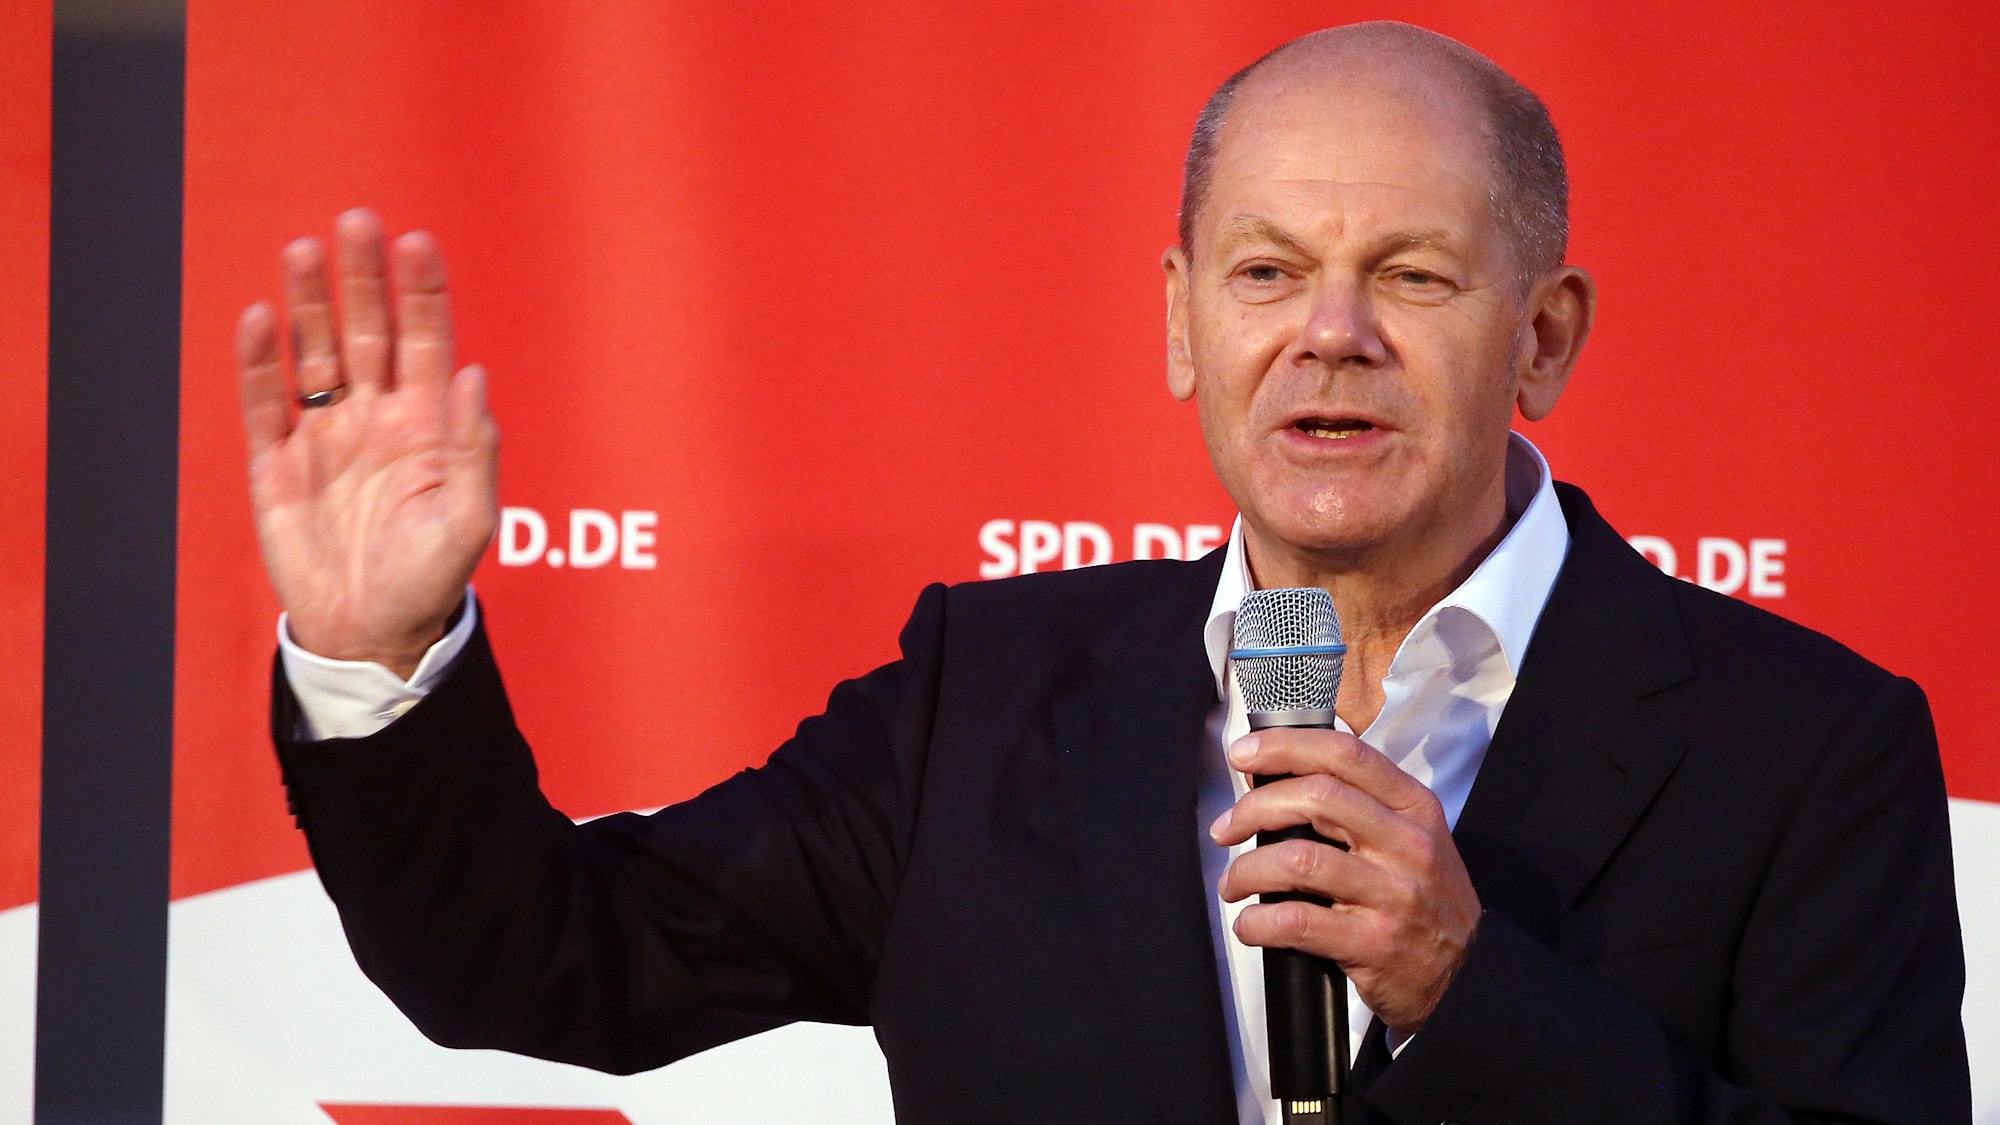 SPD-Kanzlerkandidat Olaf Scholz (hier am 03. September in Berlin) hat mit ungewöhnlichen Worten für das Impfen gegen Covid-19 geworben.